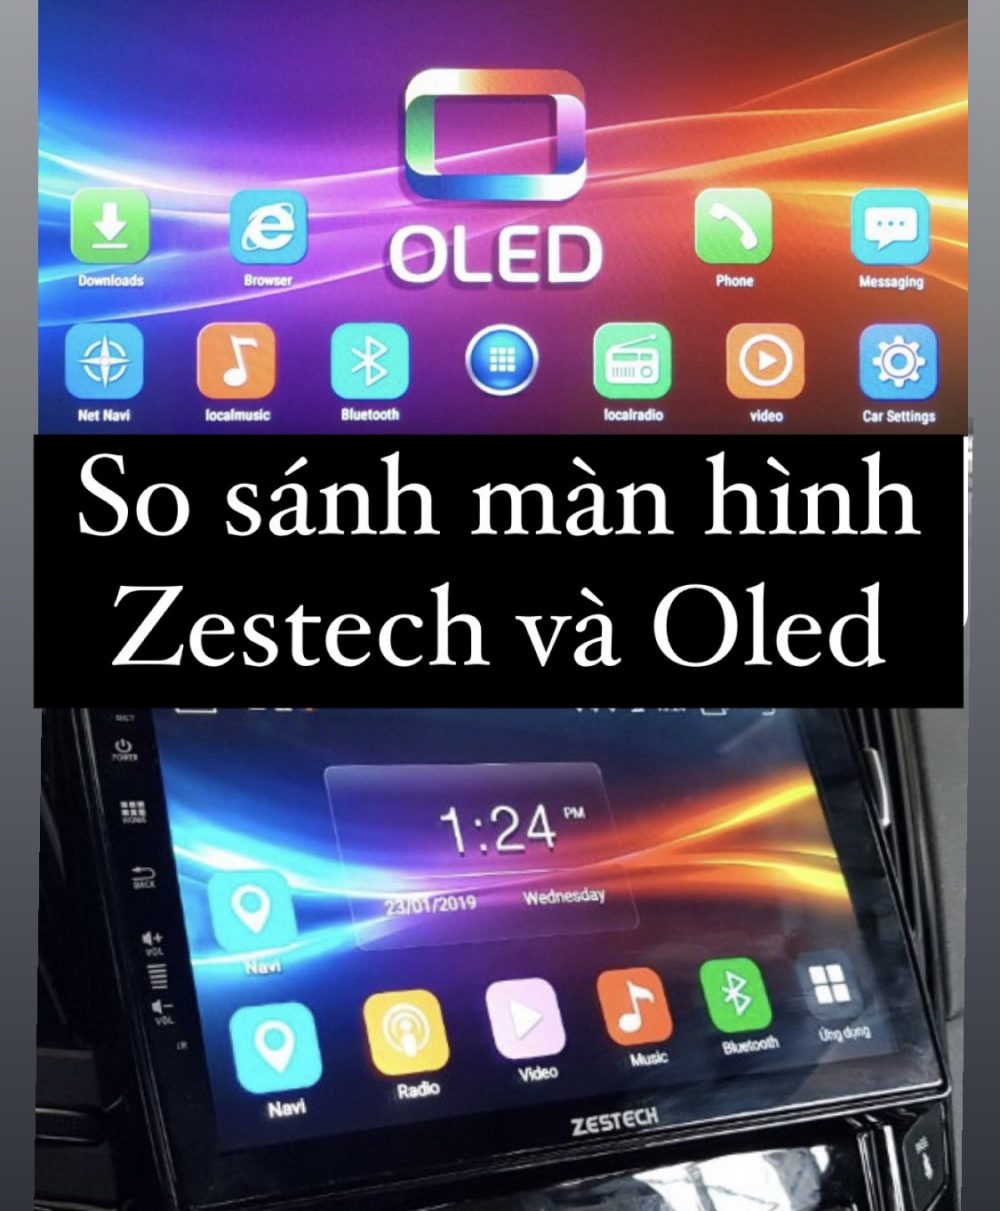 So sánh màn hình Zestech và Oled